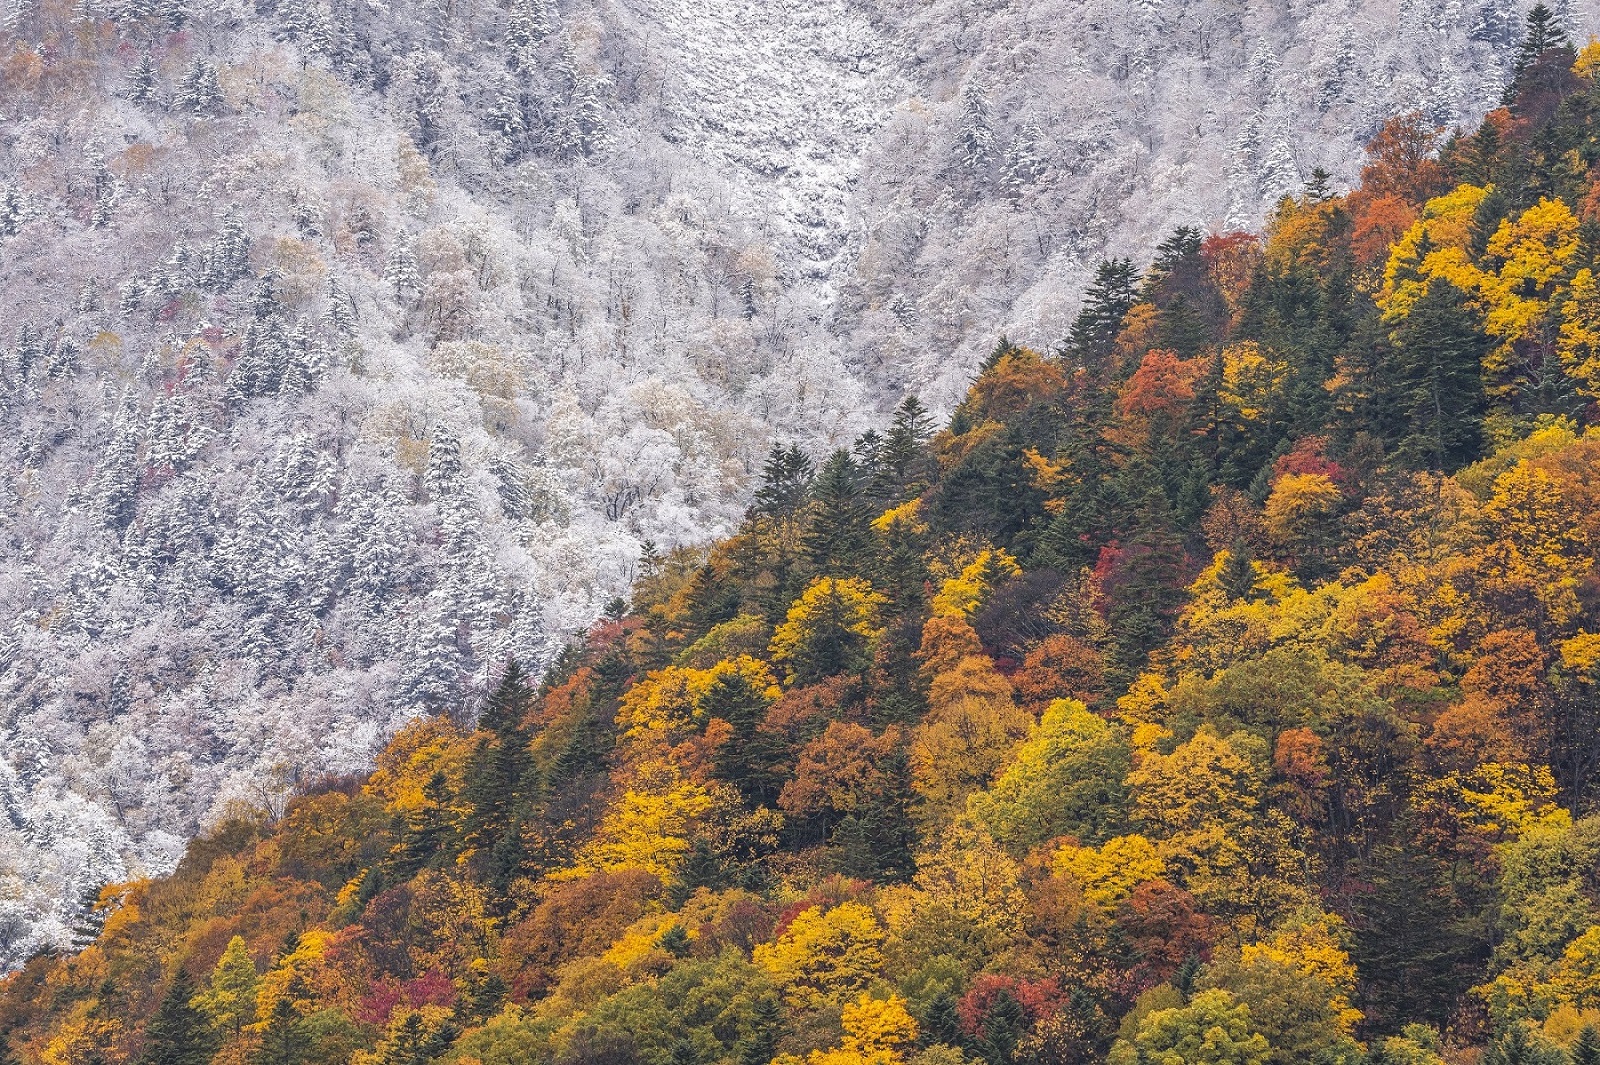 秋と冬の境界を写した安彦 嘉浩さんの写真6